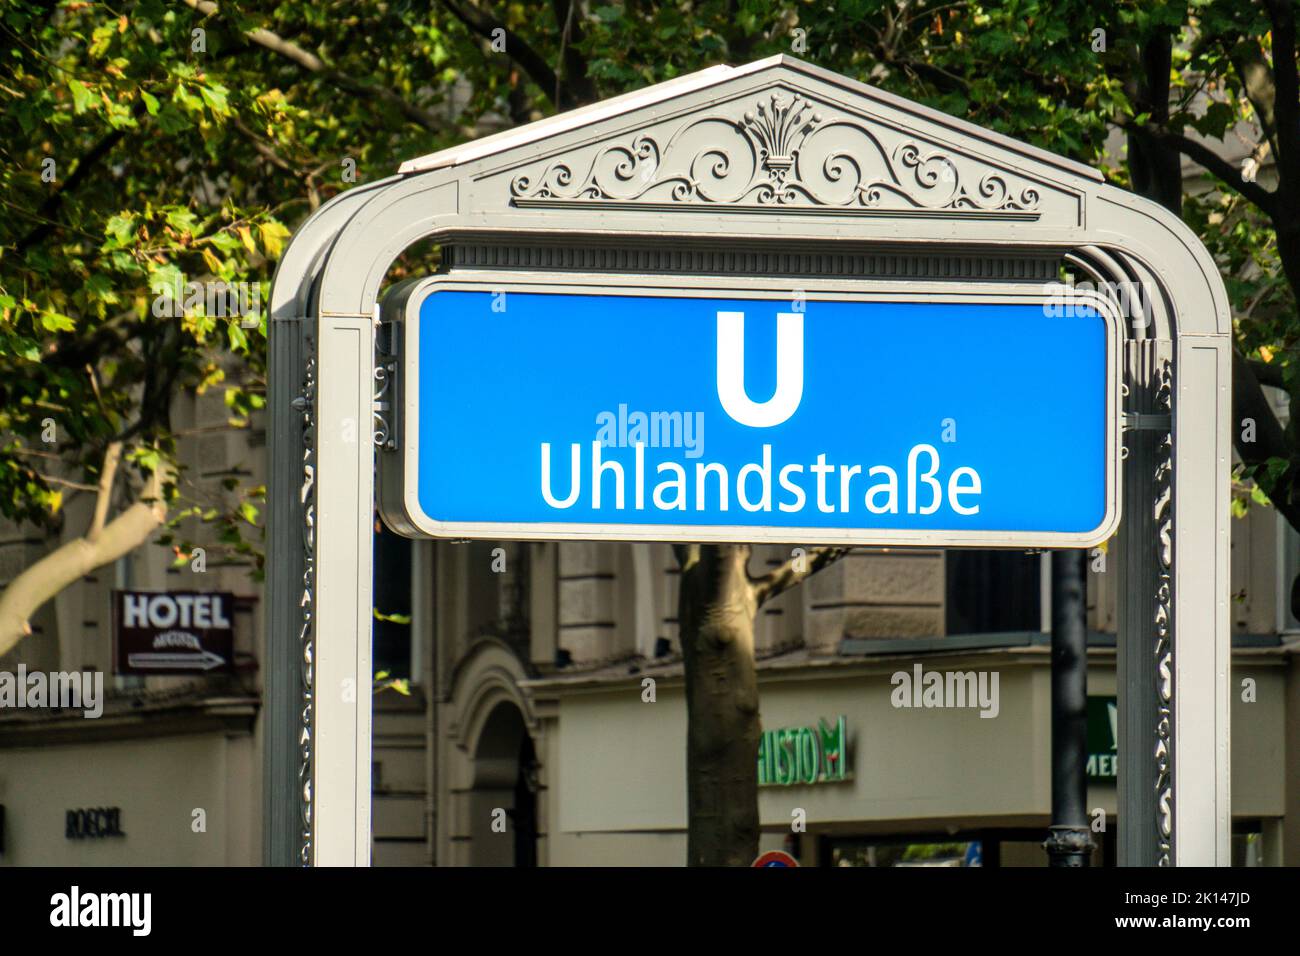 U-Bahnhof Uhlandstrasse Schild, Kurfürstendamm, Charlottenburg, Berlin Stock Photo